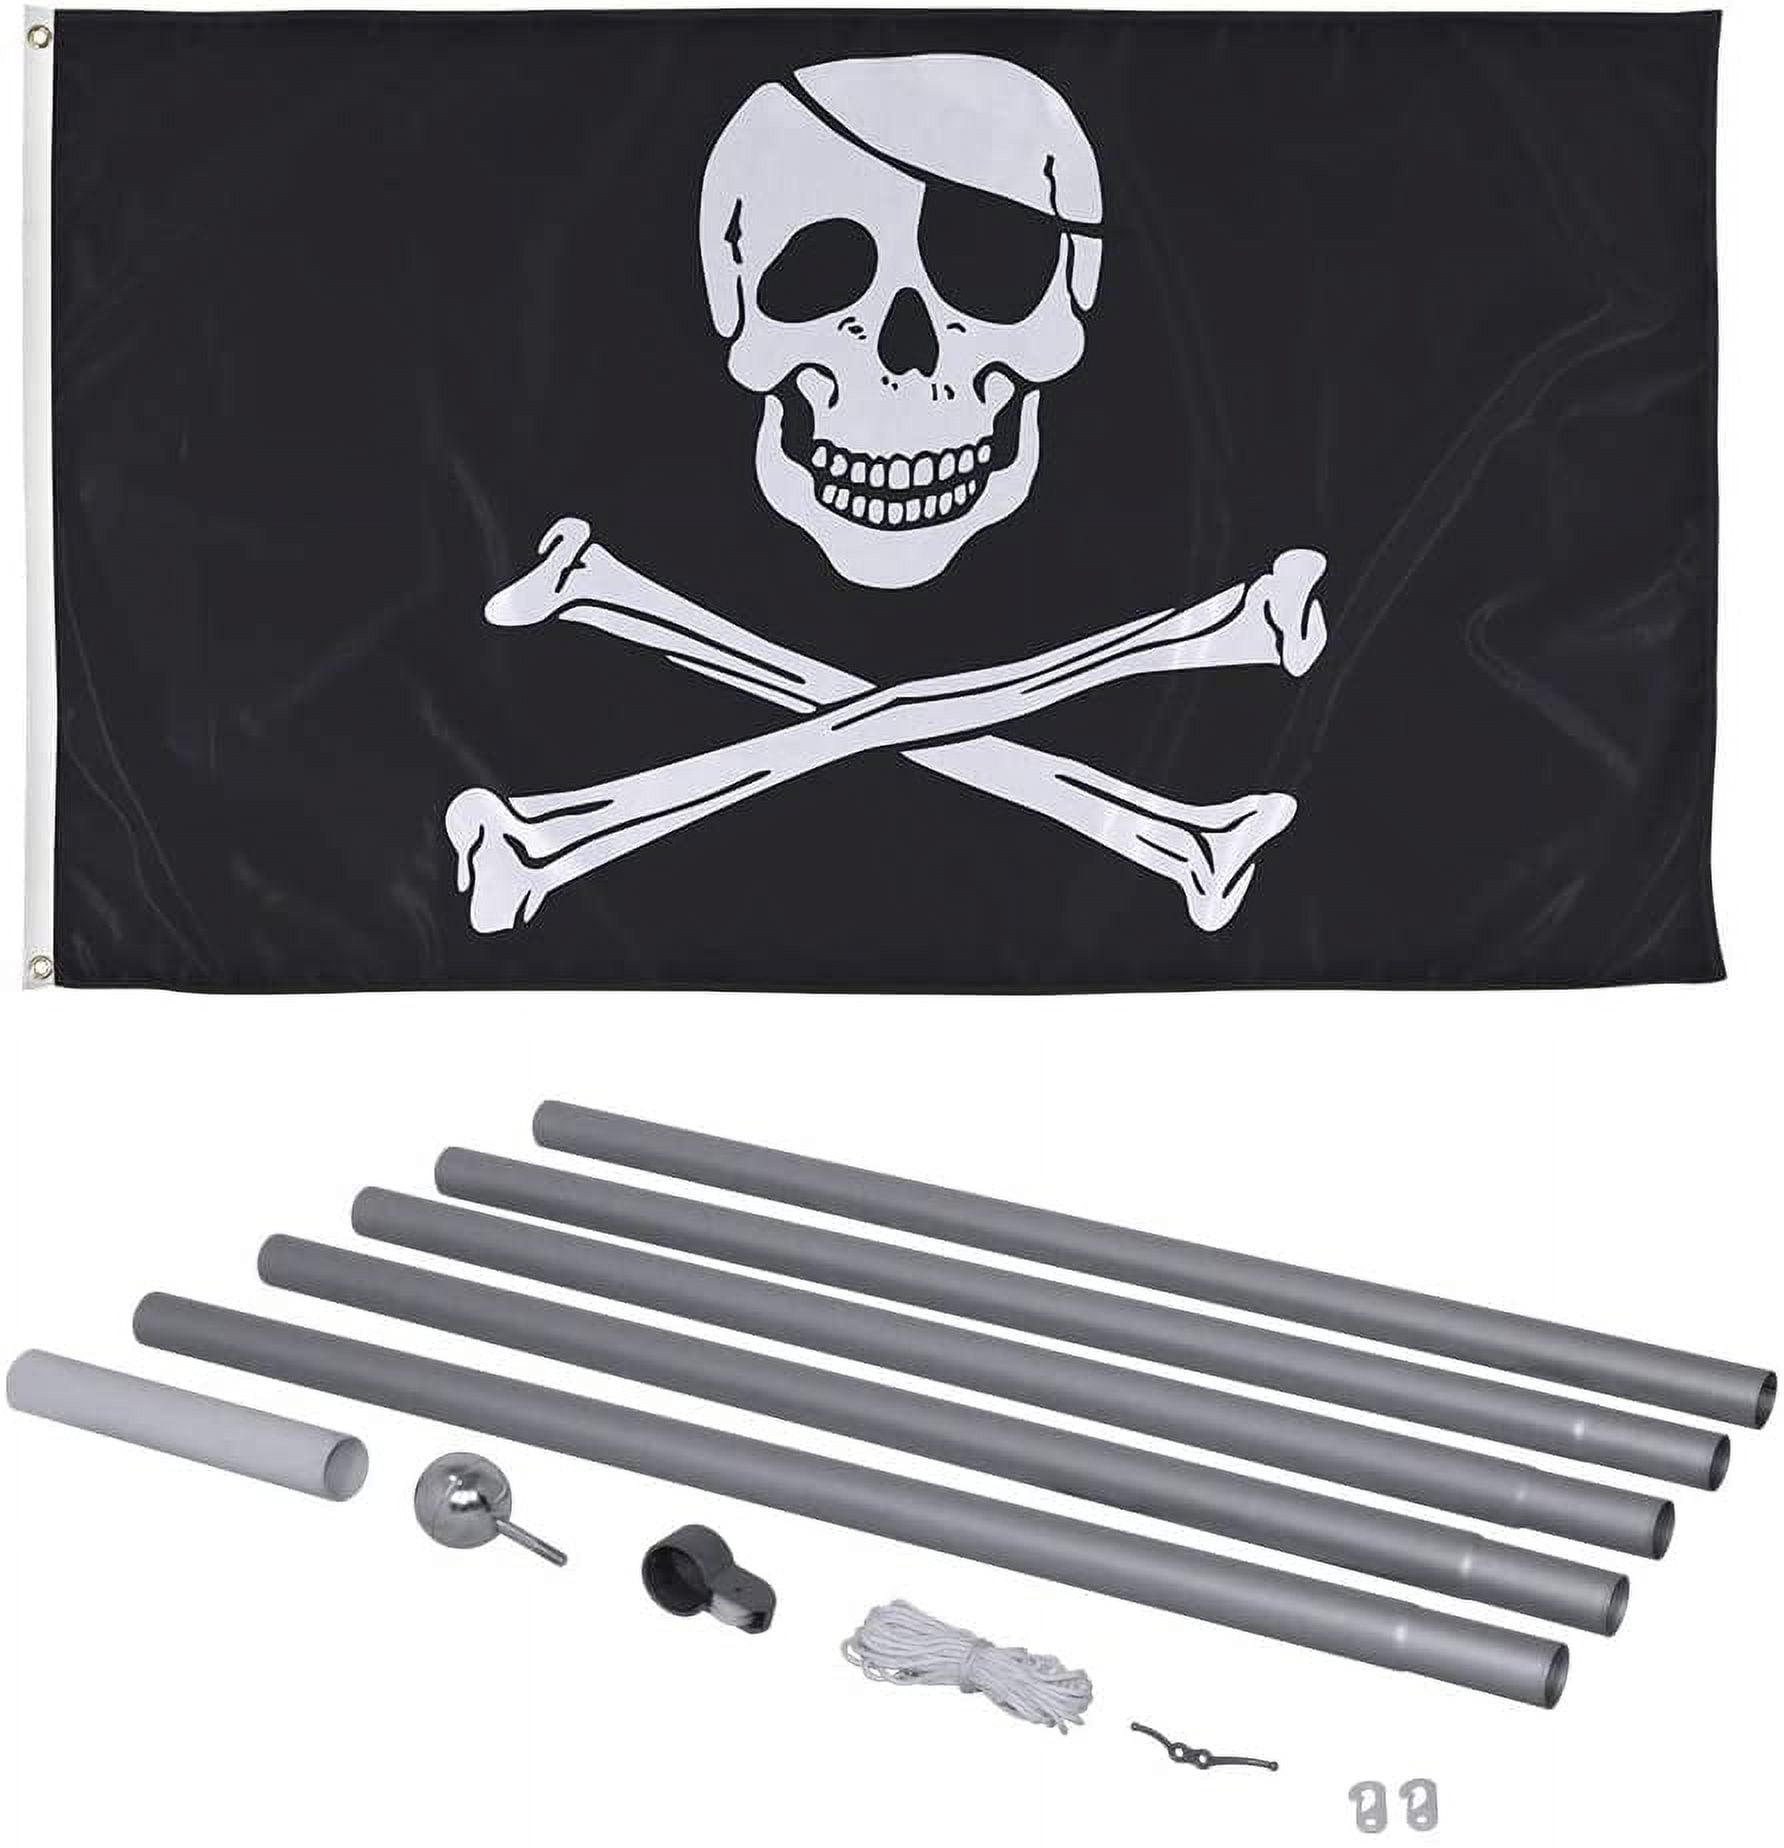 Pirate Flag with Bones, Unique Design, 3x5 Ft / 90x150 cm size, EU Made